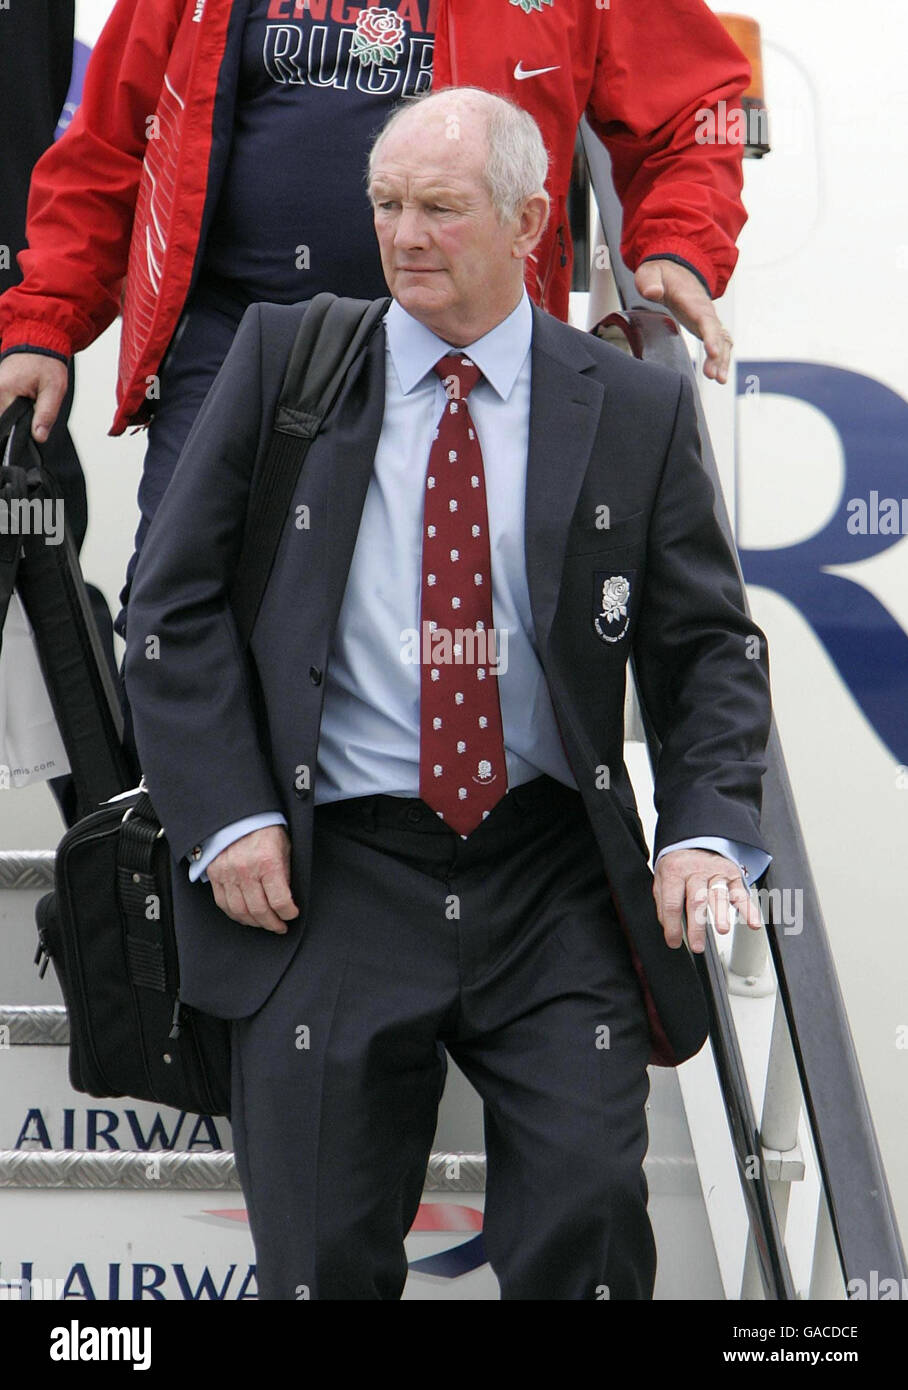 Il capo pullman inglese Brian Ashton sui gradini dell'aereo della squadra dopo l'arrivo all'aeroporto di Heathrow, Londra. Foto Stock